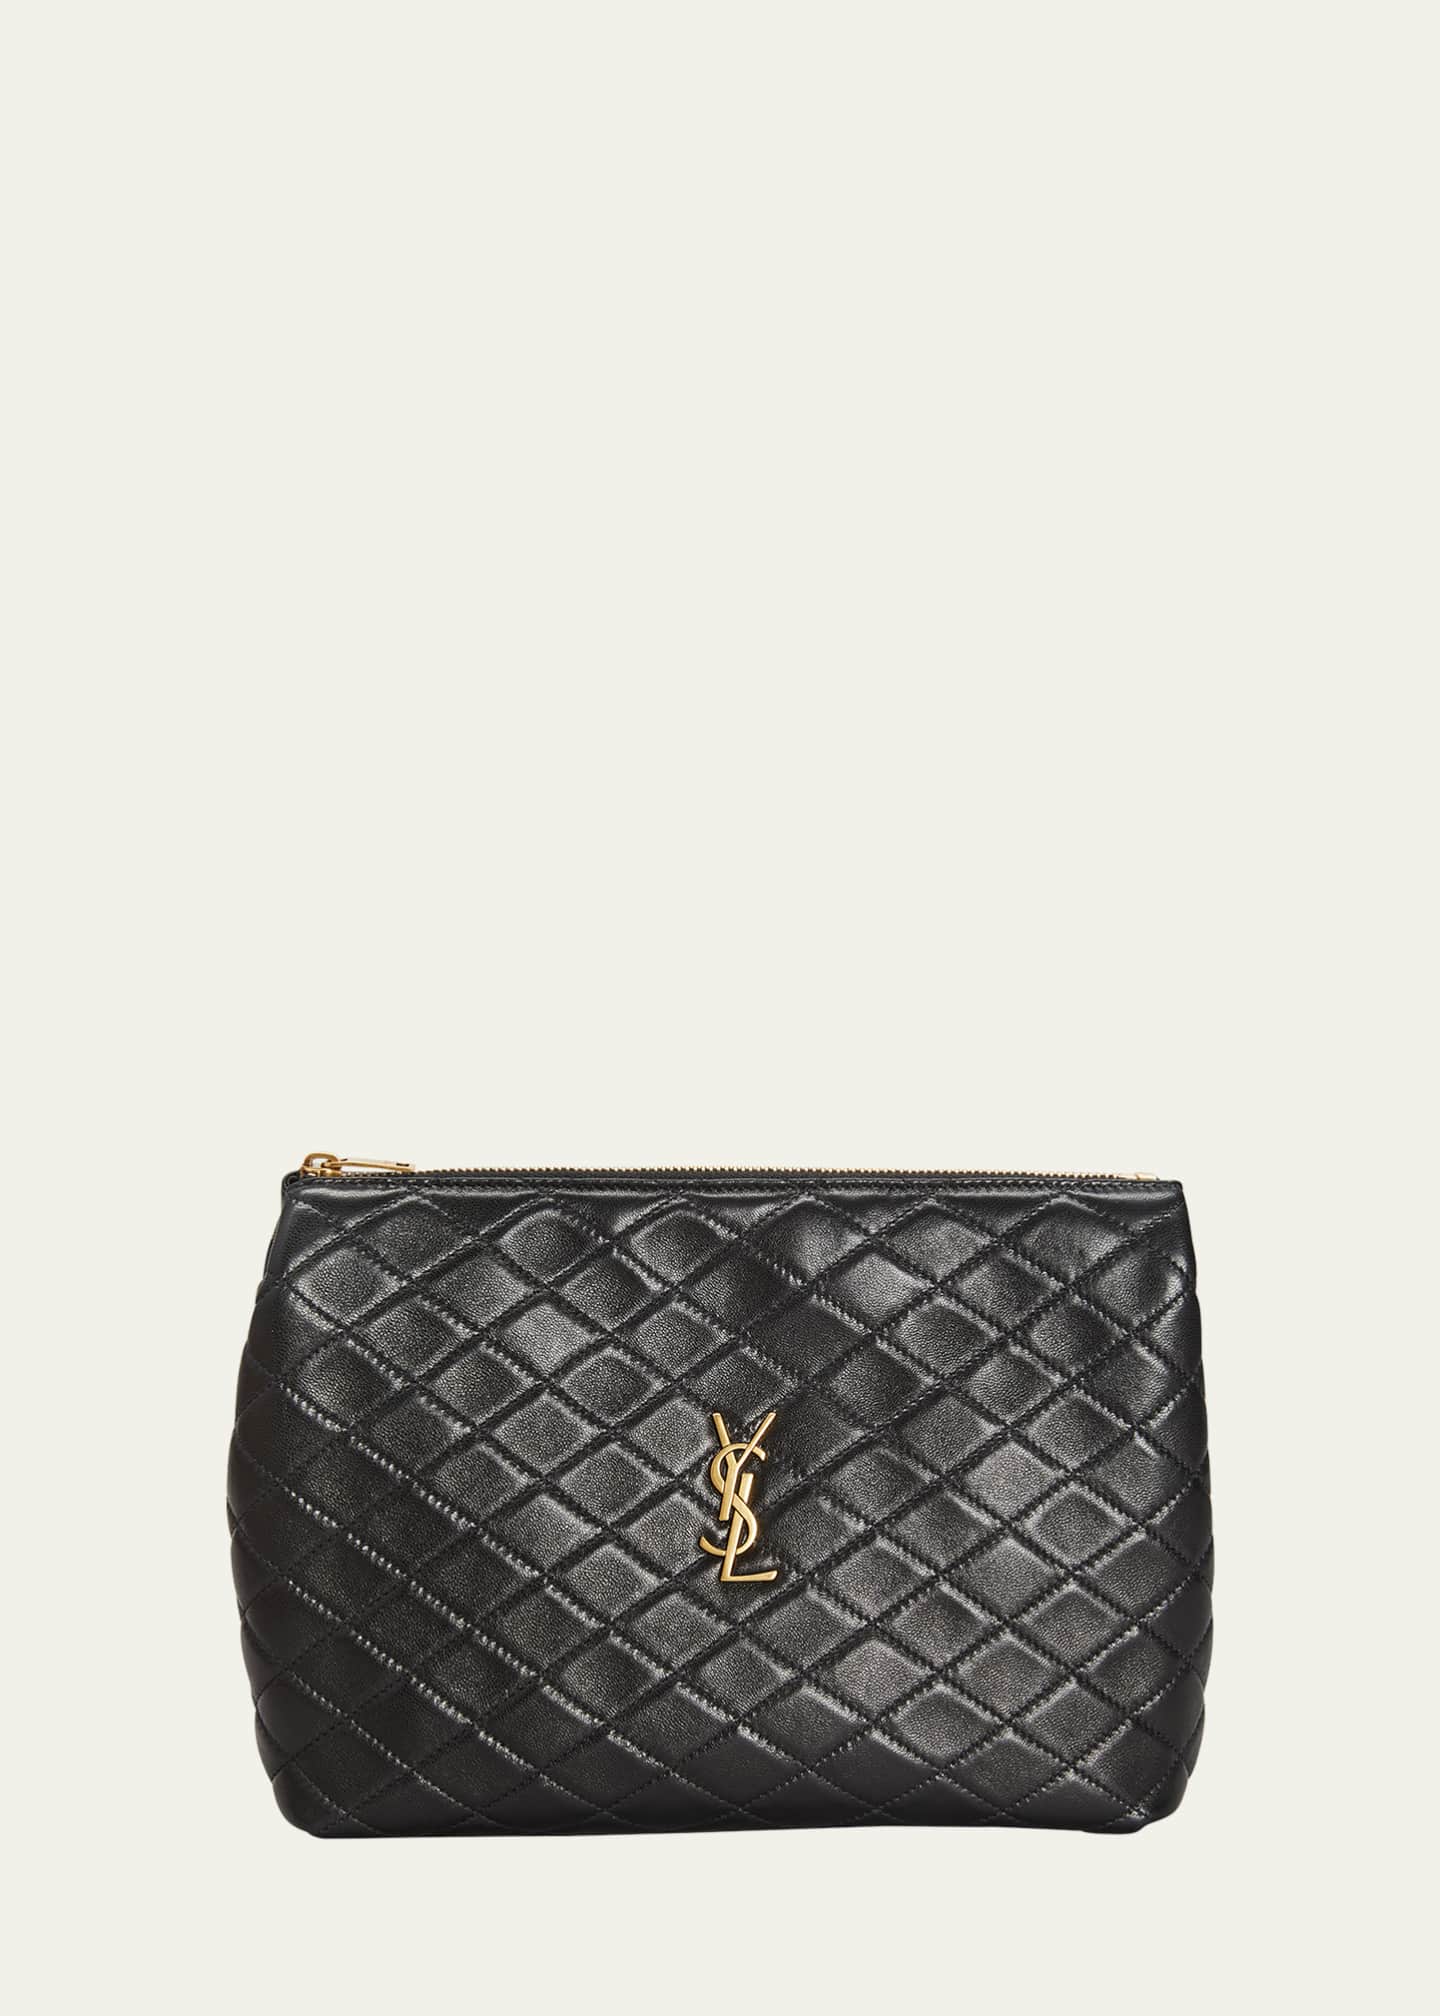 Saint Laurent YSL New Pouch Monogram Clutch Bag - Black for Women